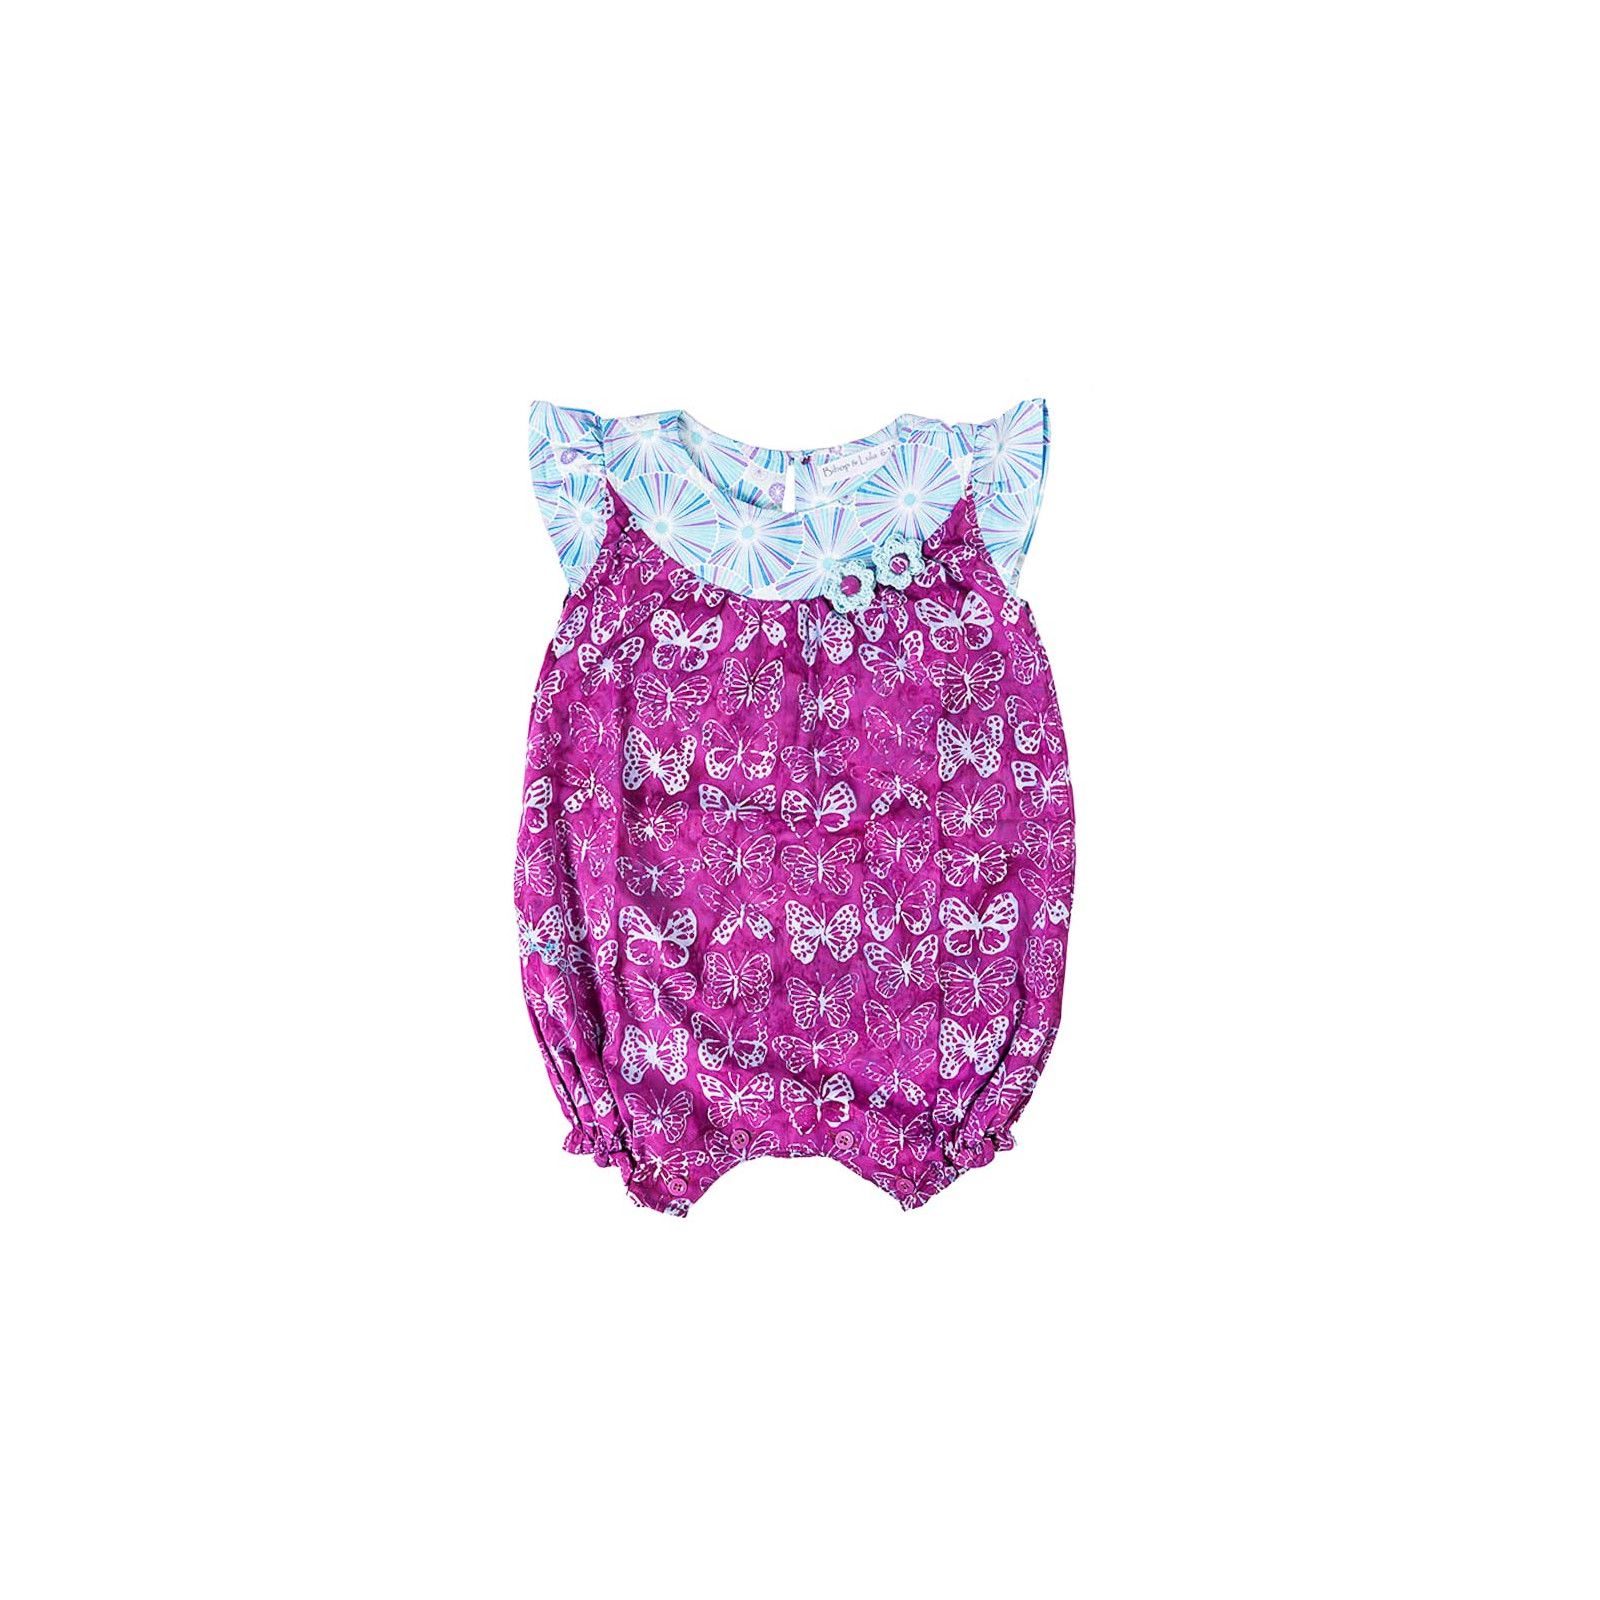 Barboteuse coton bébé fille 0-18 mois violette avec papillons